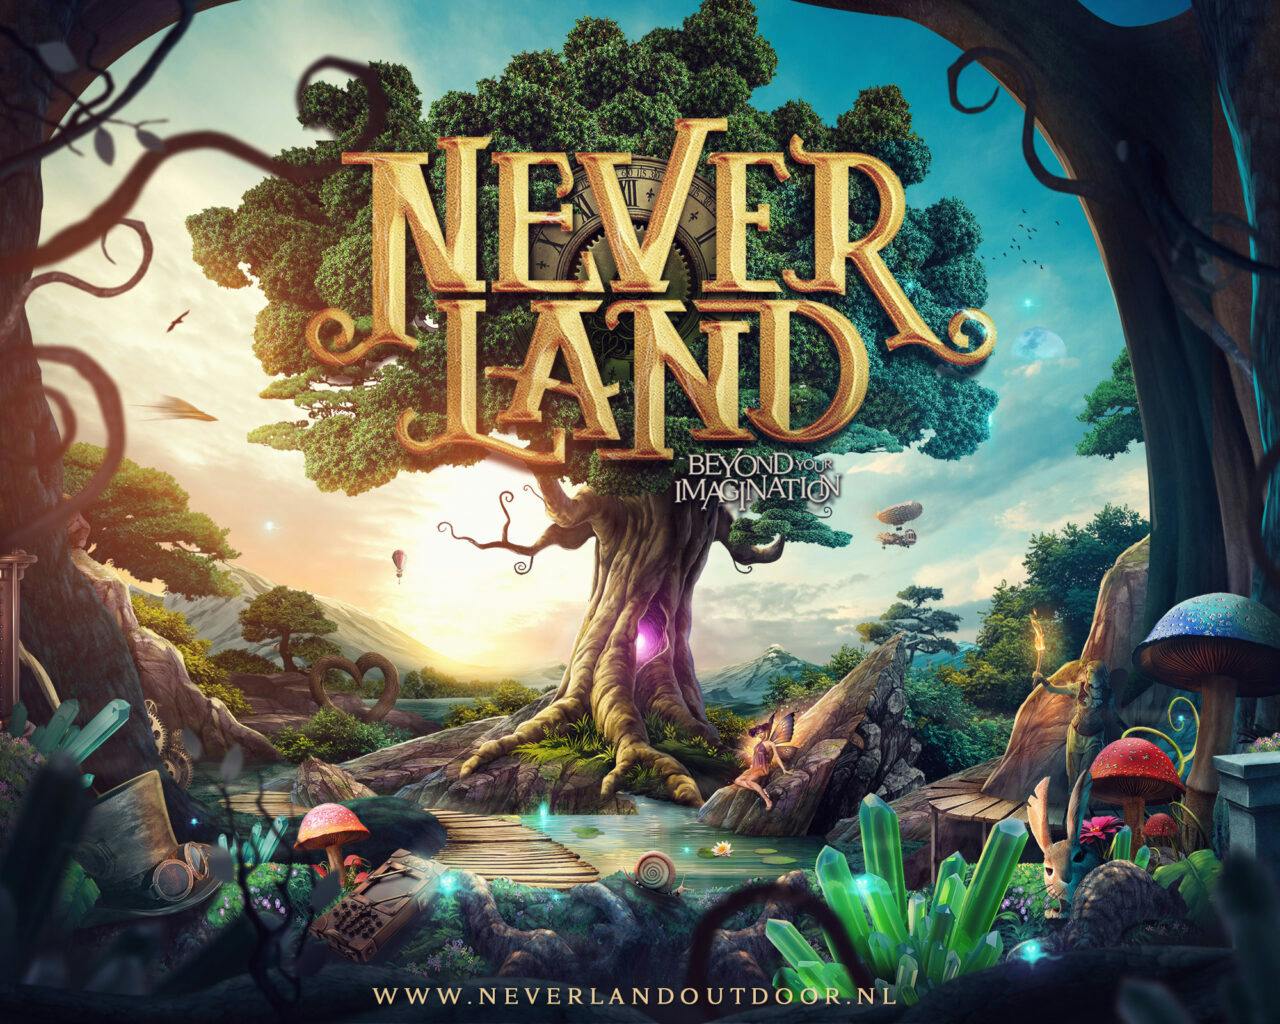 Neverland: Dieses Festival will Tomorrowland Konkurrenz machen!